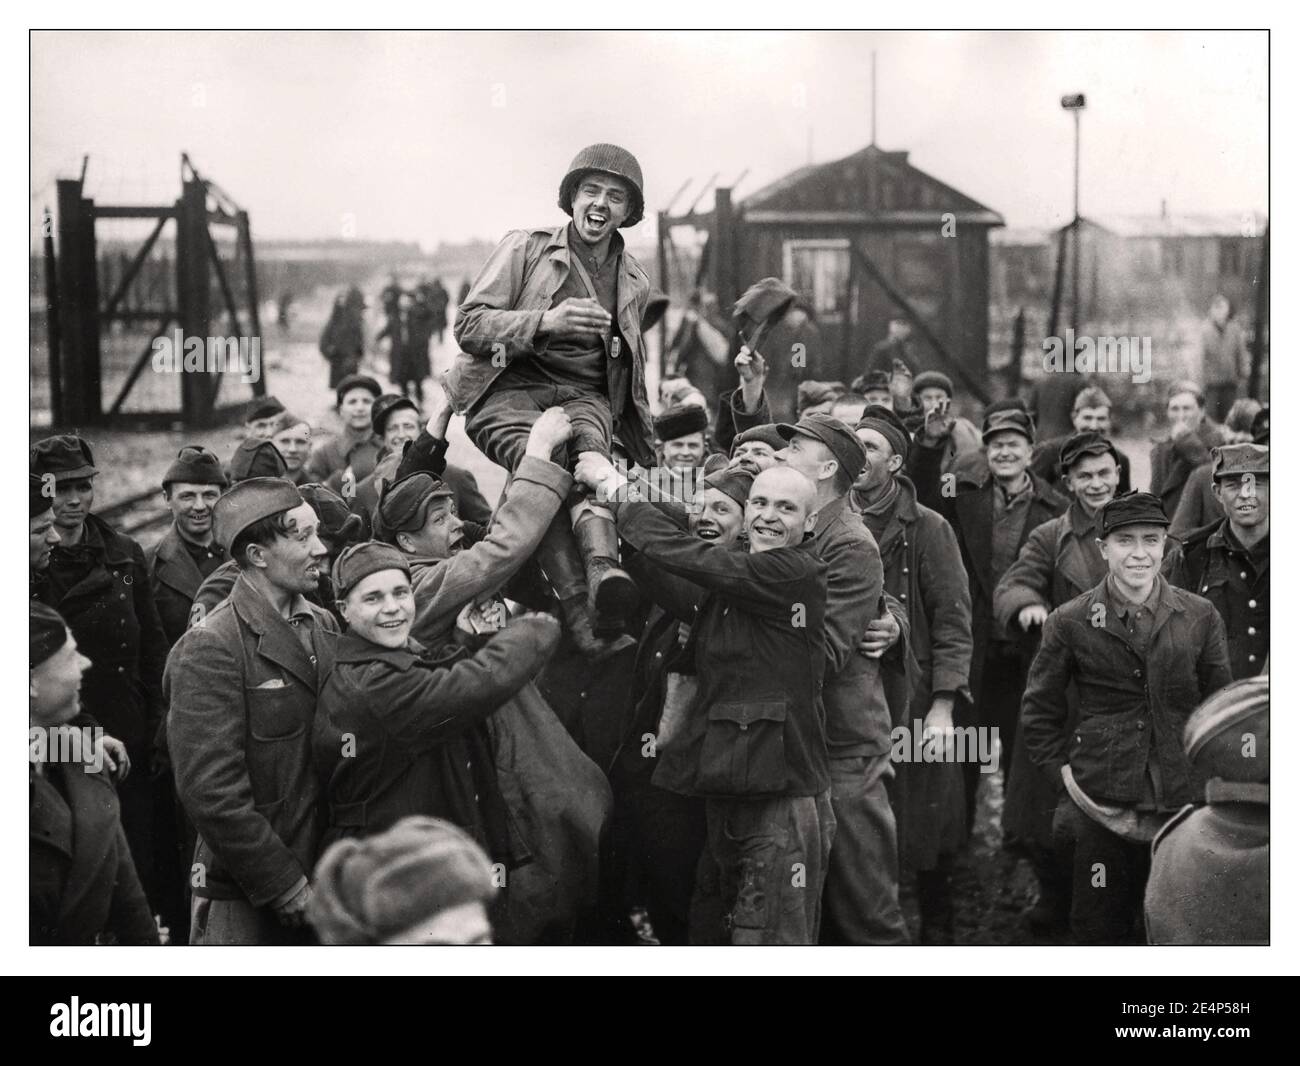 Libération de l'ESELHEIDE WW2 libération du camp de concentration nazi libération des prisonniers de guerre russes levant un soldat américain après que l'armée américaine 9th les a libérés de leur camp à Eselheide Allemagne 9th avril 1945 Banque D'Images